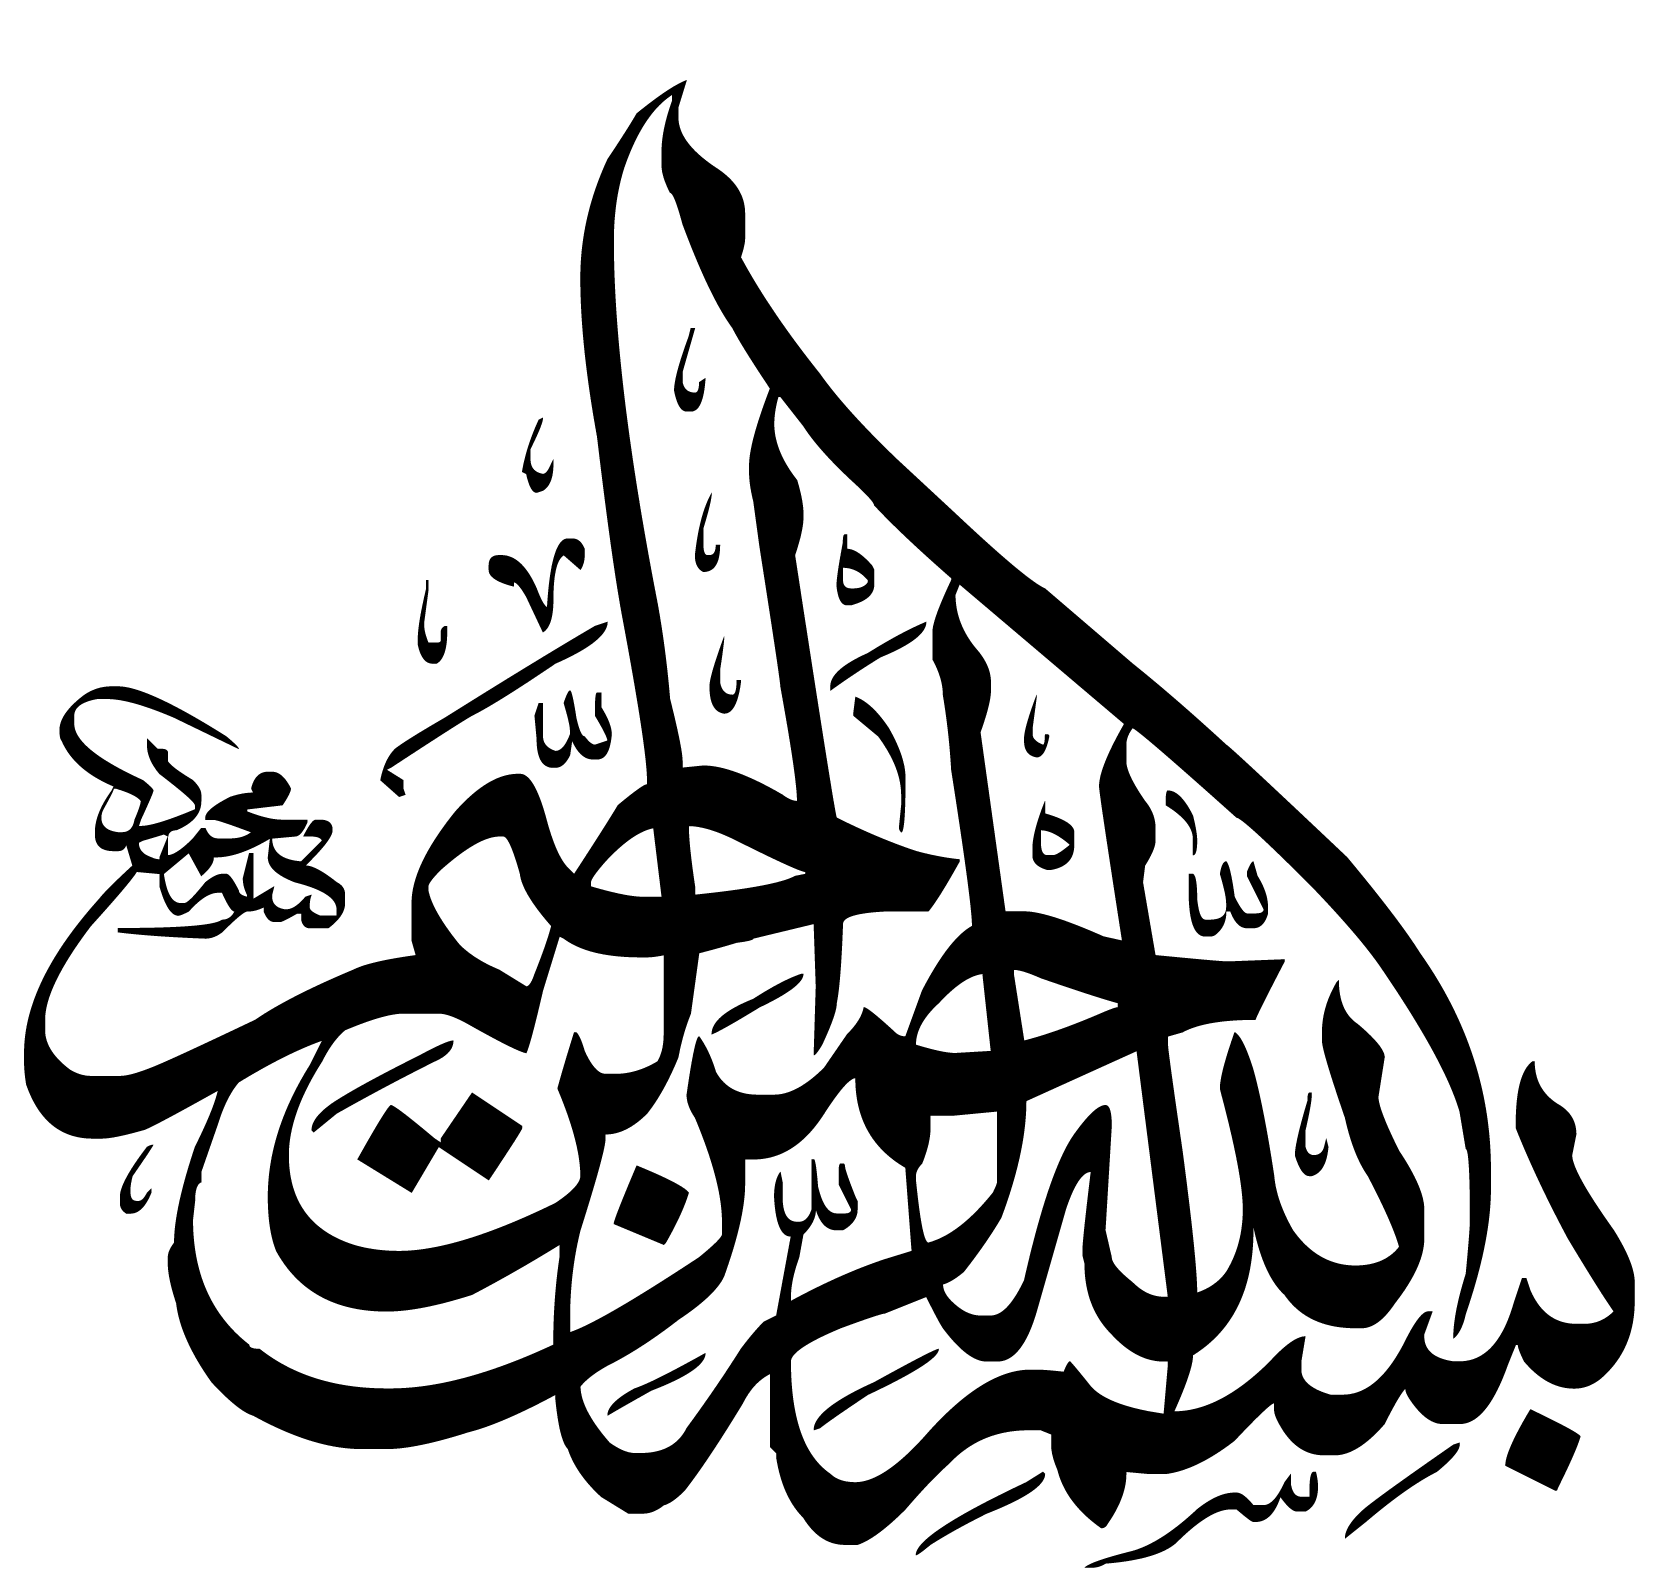 بالصور .. بسم الله الرحمن الرحيم باروع الخطوط العربية منتديات درر العراق